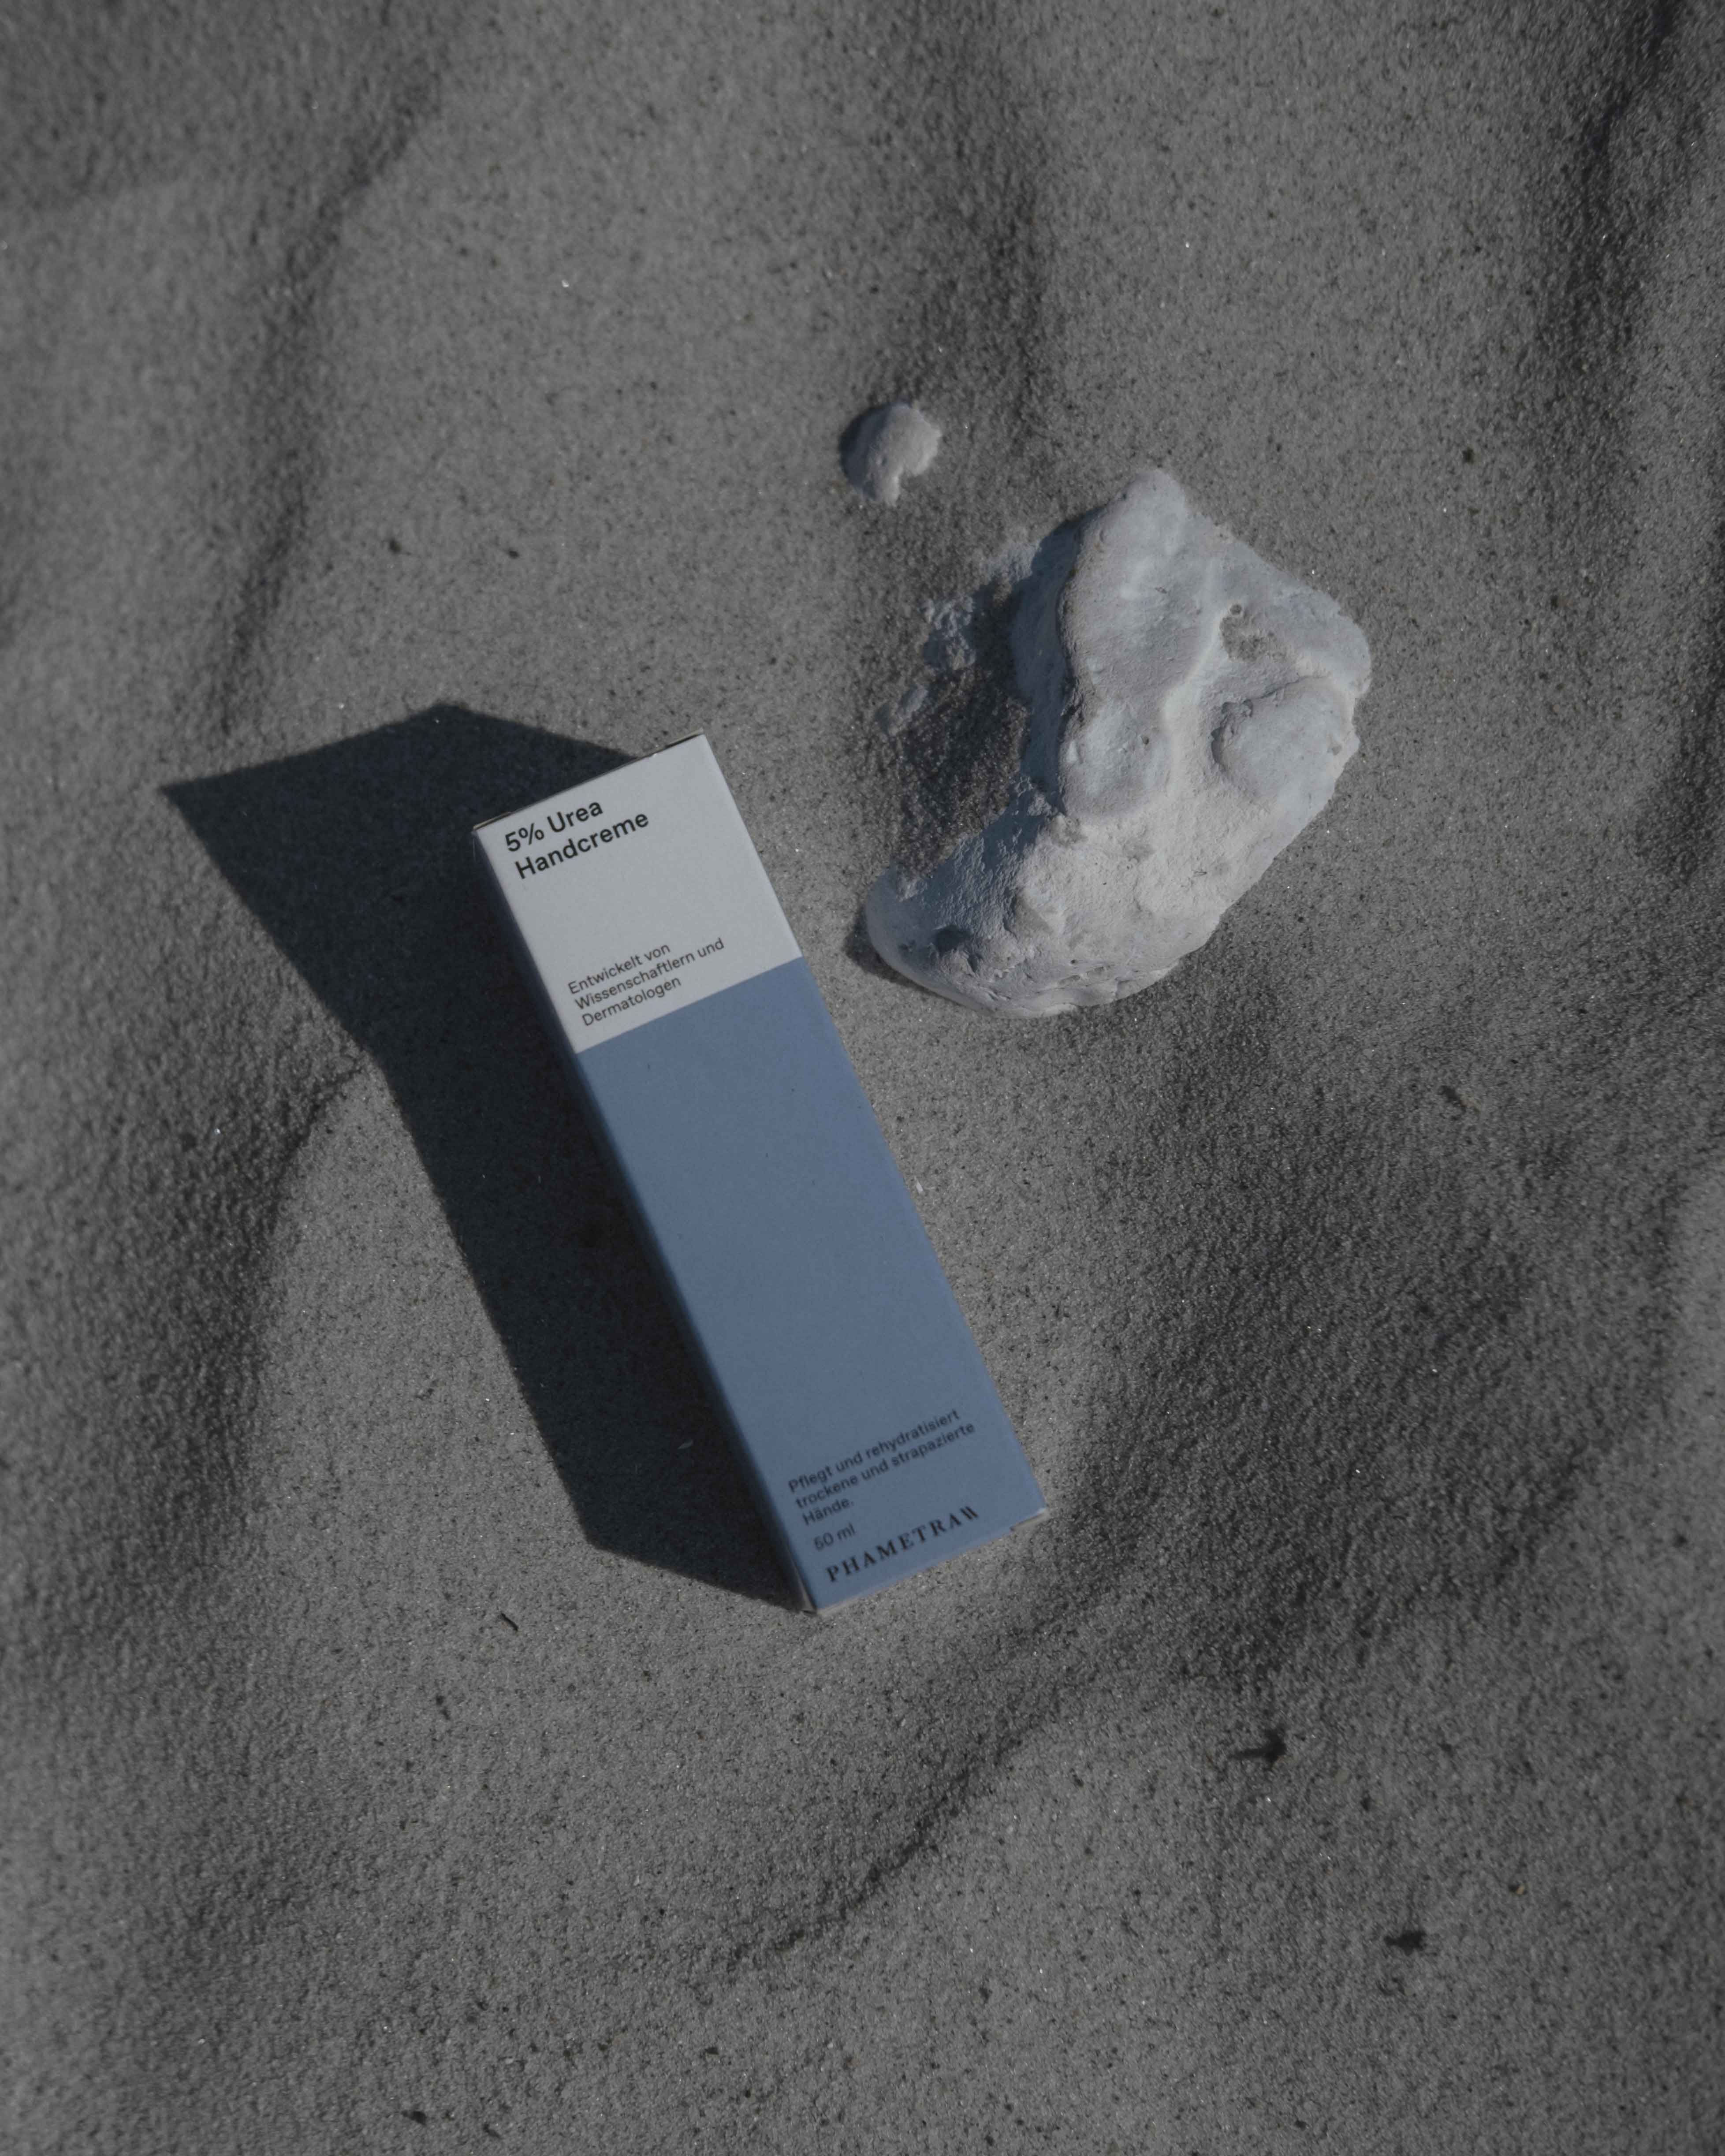 Die blau weiße Umverpackung der Phametra 5% Urea Handcreme liegt im Sand neben einem weißen Stein